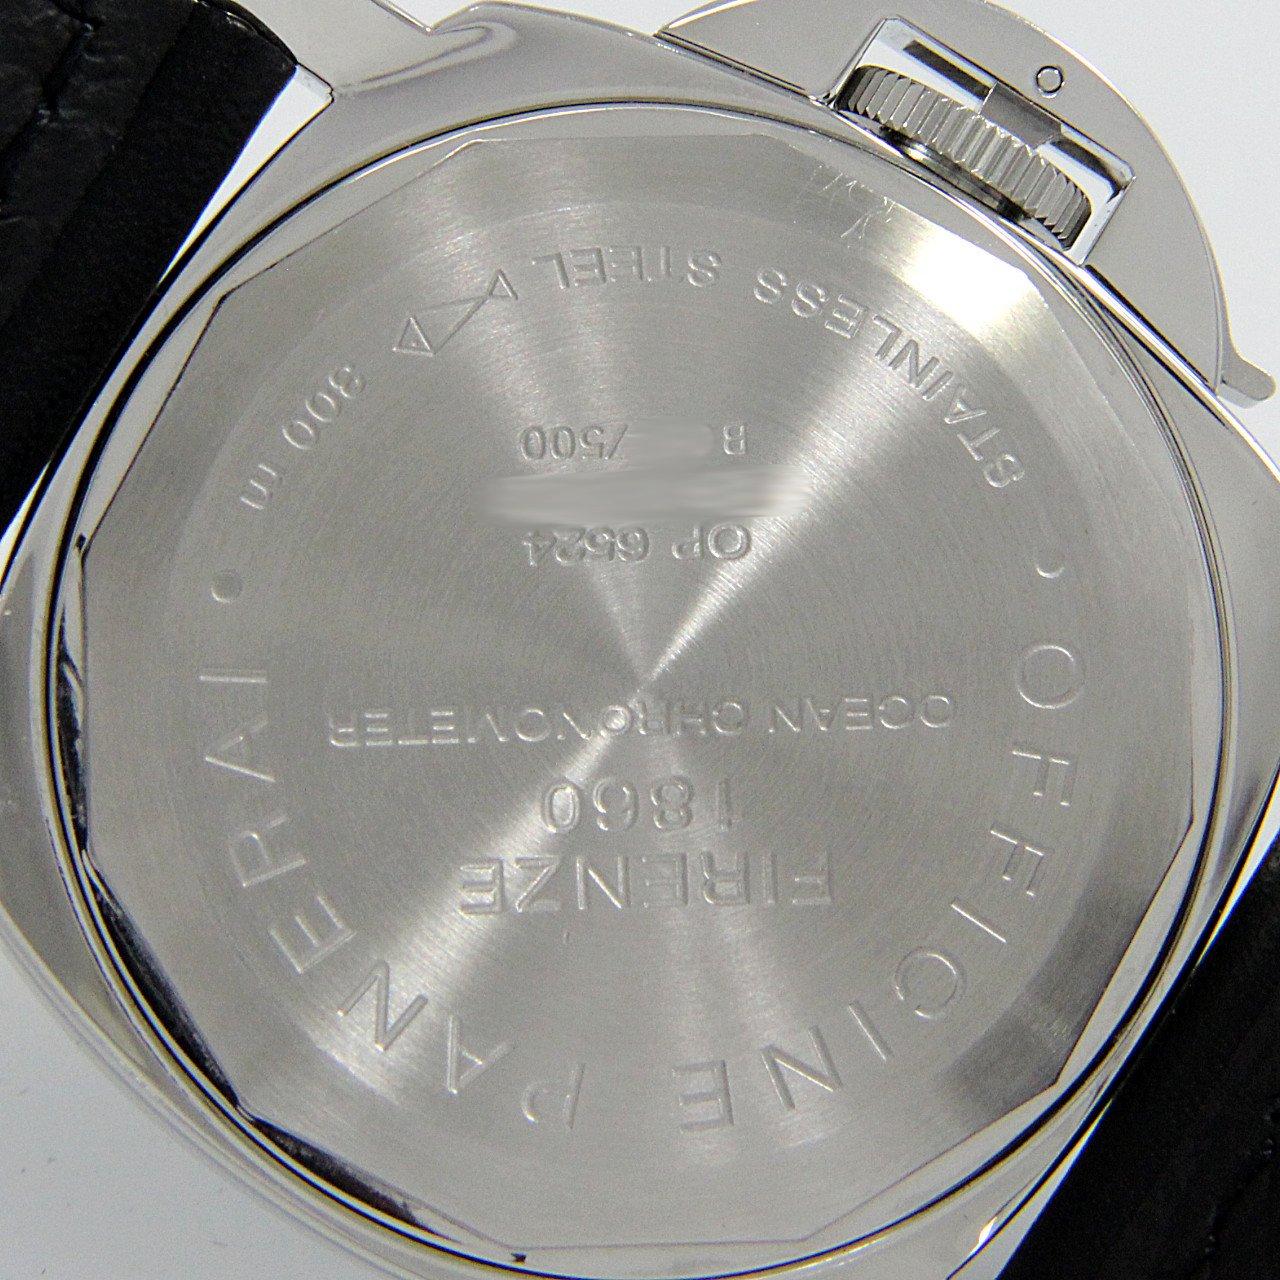 パネライ PANERAI PAM00023 A番(1998年製造) ブラック メンズ 腕時計